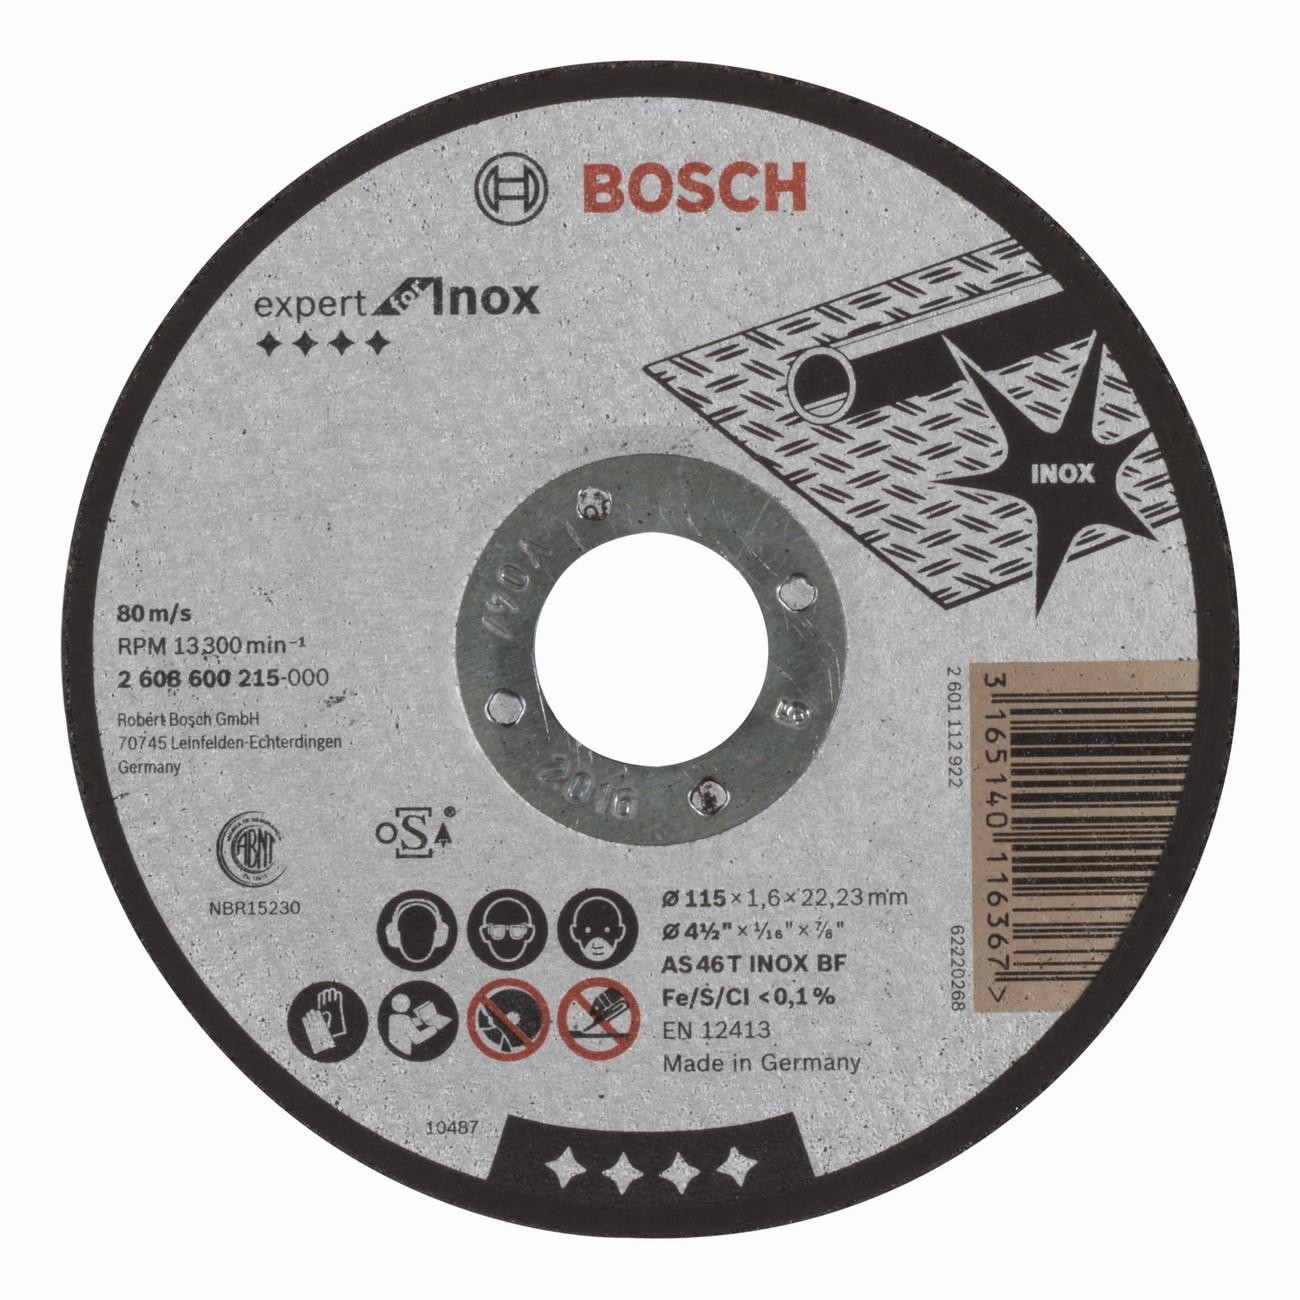 BOSCH Professional AS 46 T INOX BF Диск за рязане за инокс 115 мм 1.6 мм (2608600215)